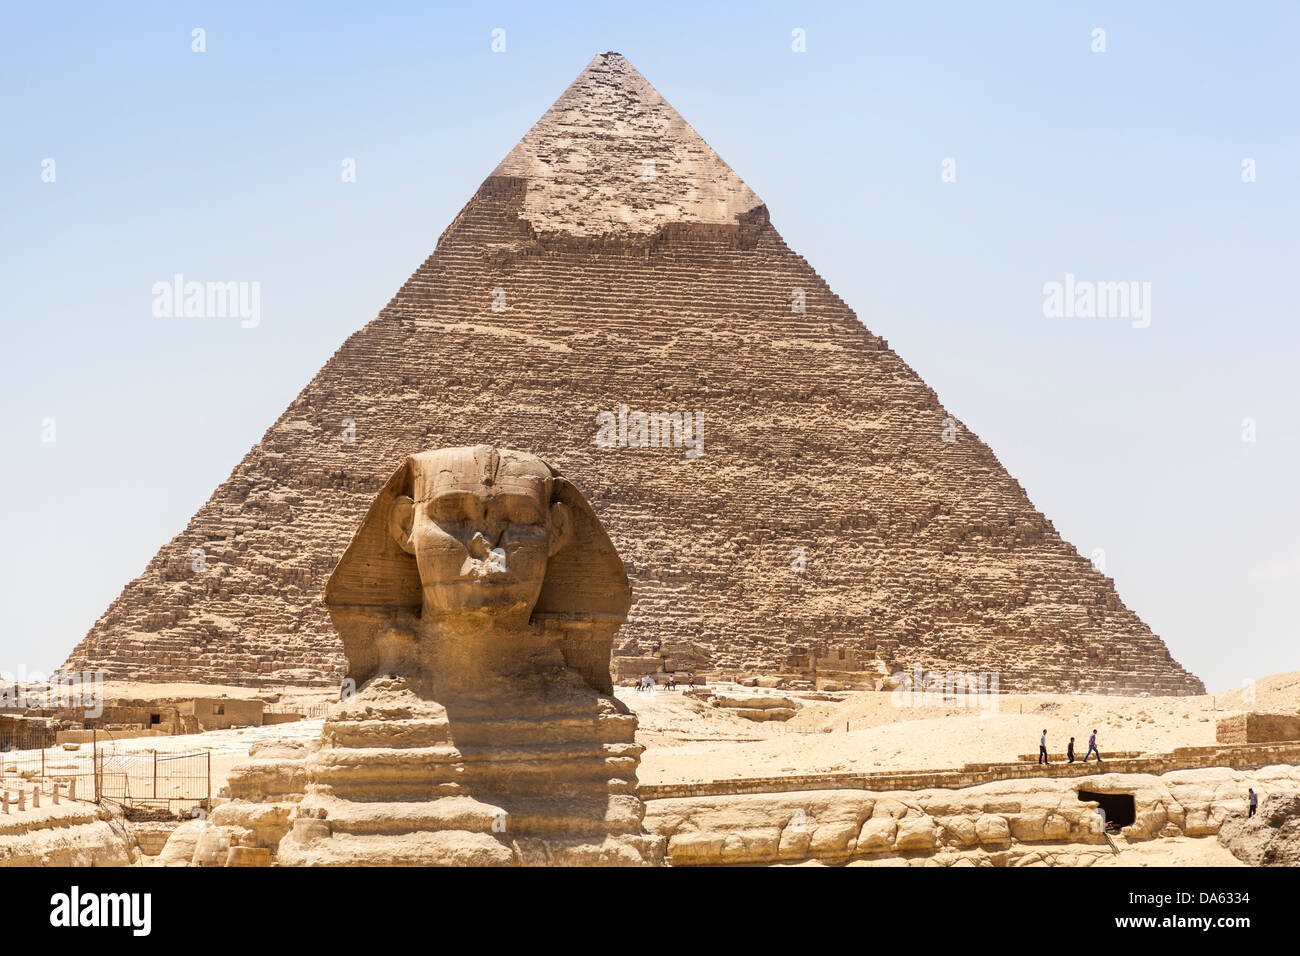 Le grand Sphinx et pyramide de Khafré, également connu sous le nom de pyramide de Khéphren, Giza, Le Caire, Egypte Banque D'Images